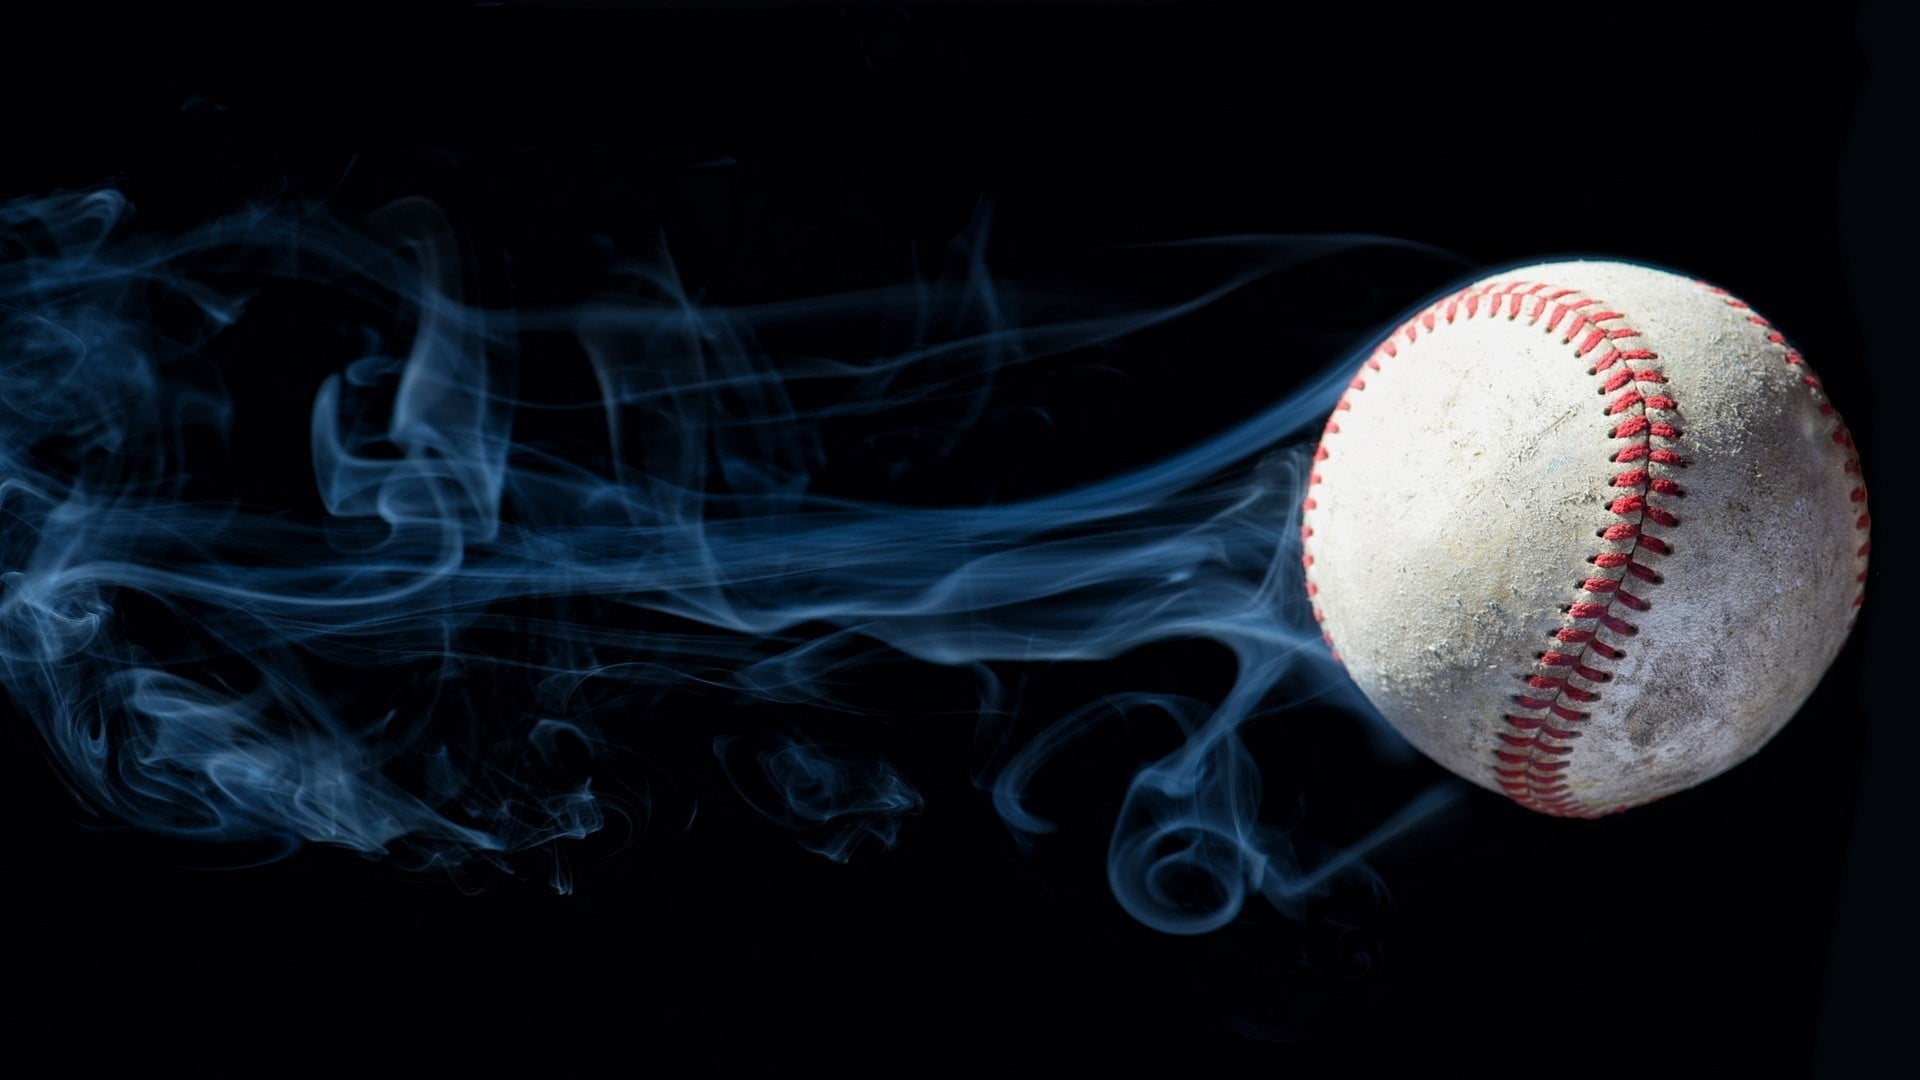 white and red baseball, baseball, smoke, photo manipulation, ball